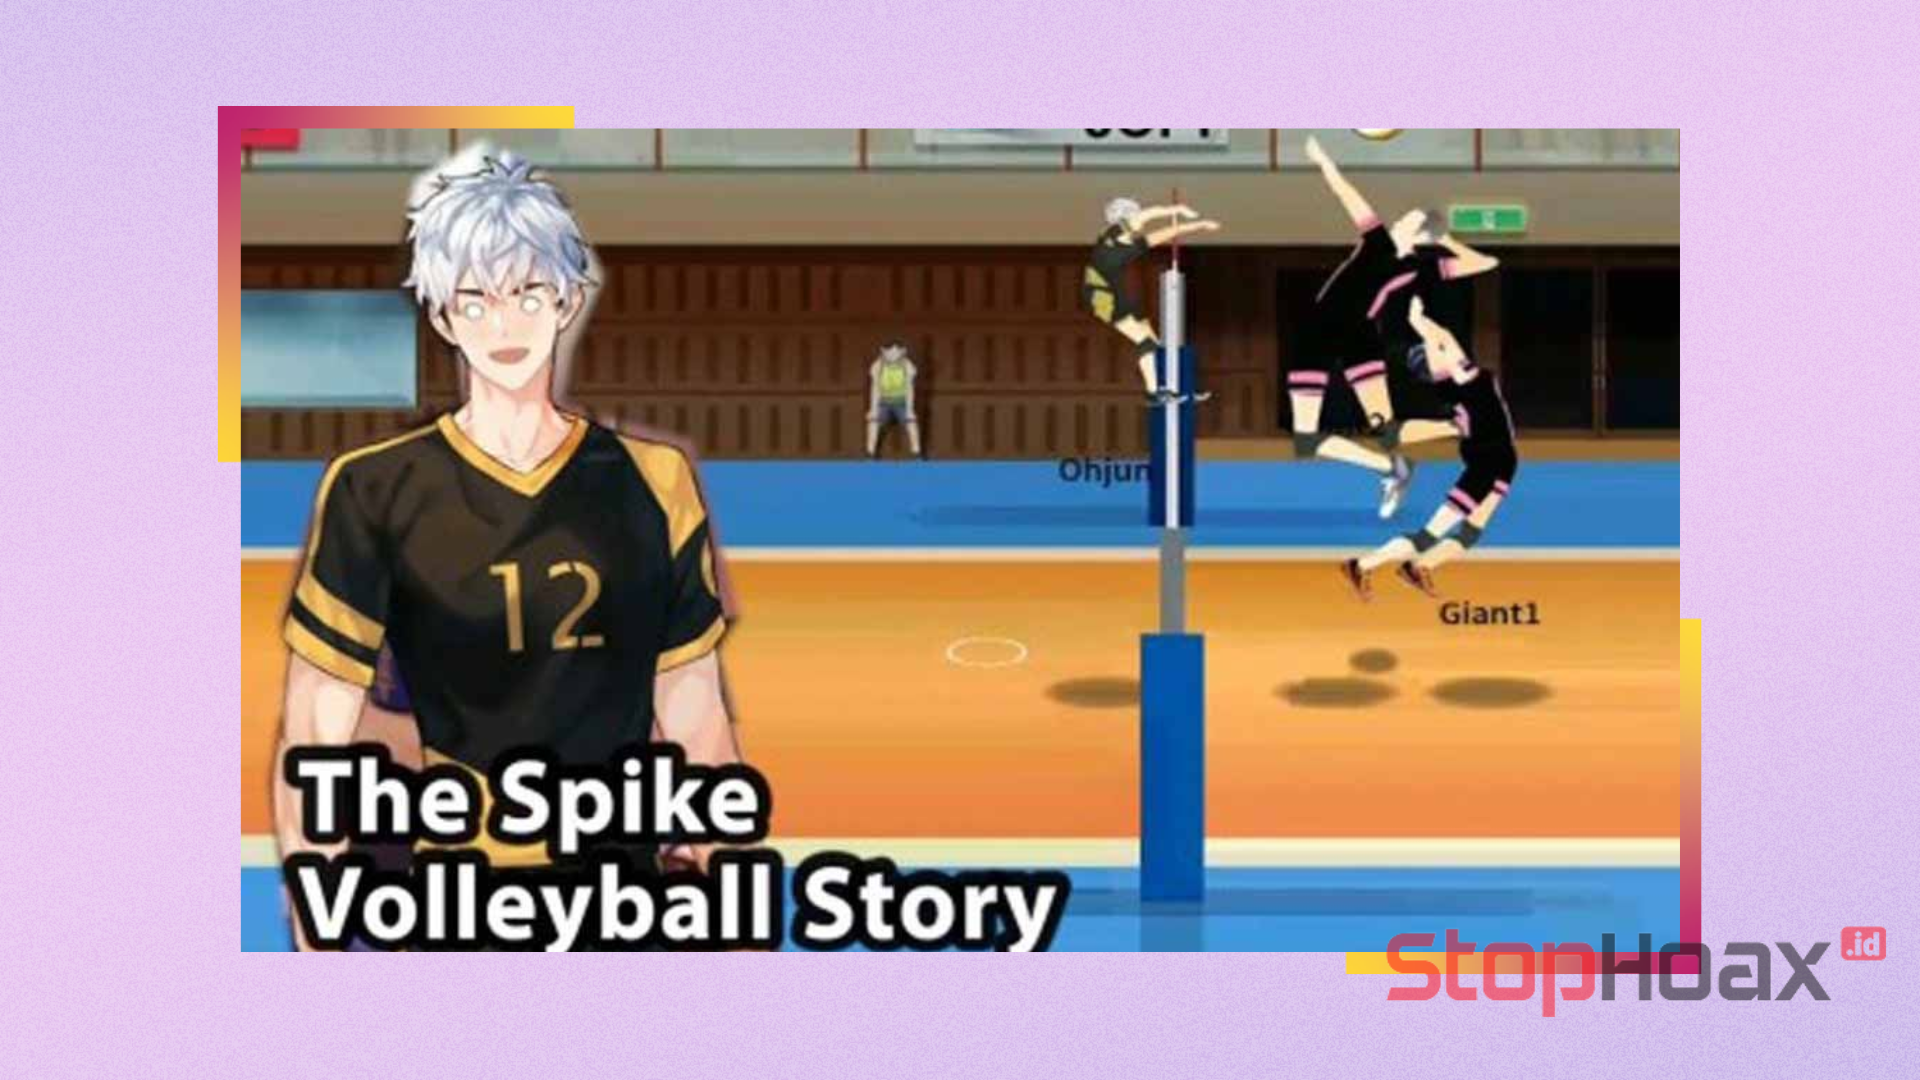 Rangkuman Keunggulan The Spike Volleyball Story Mod